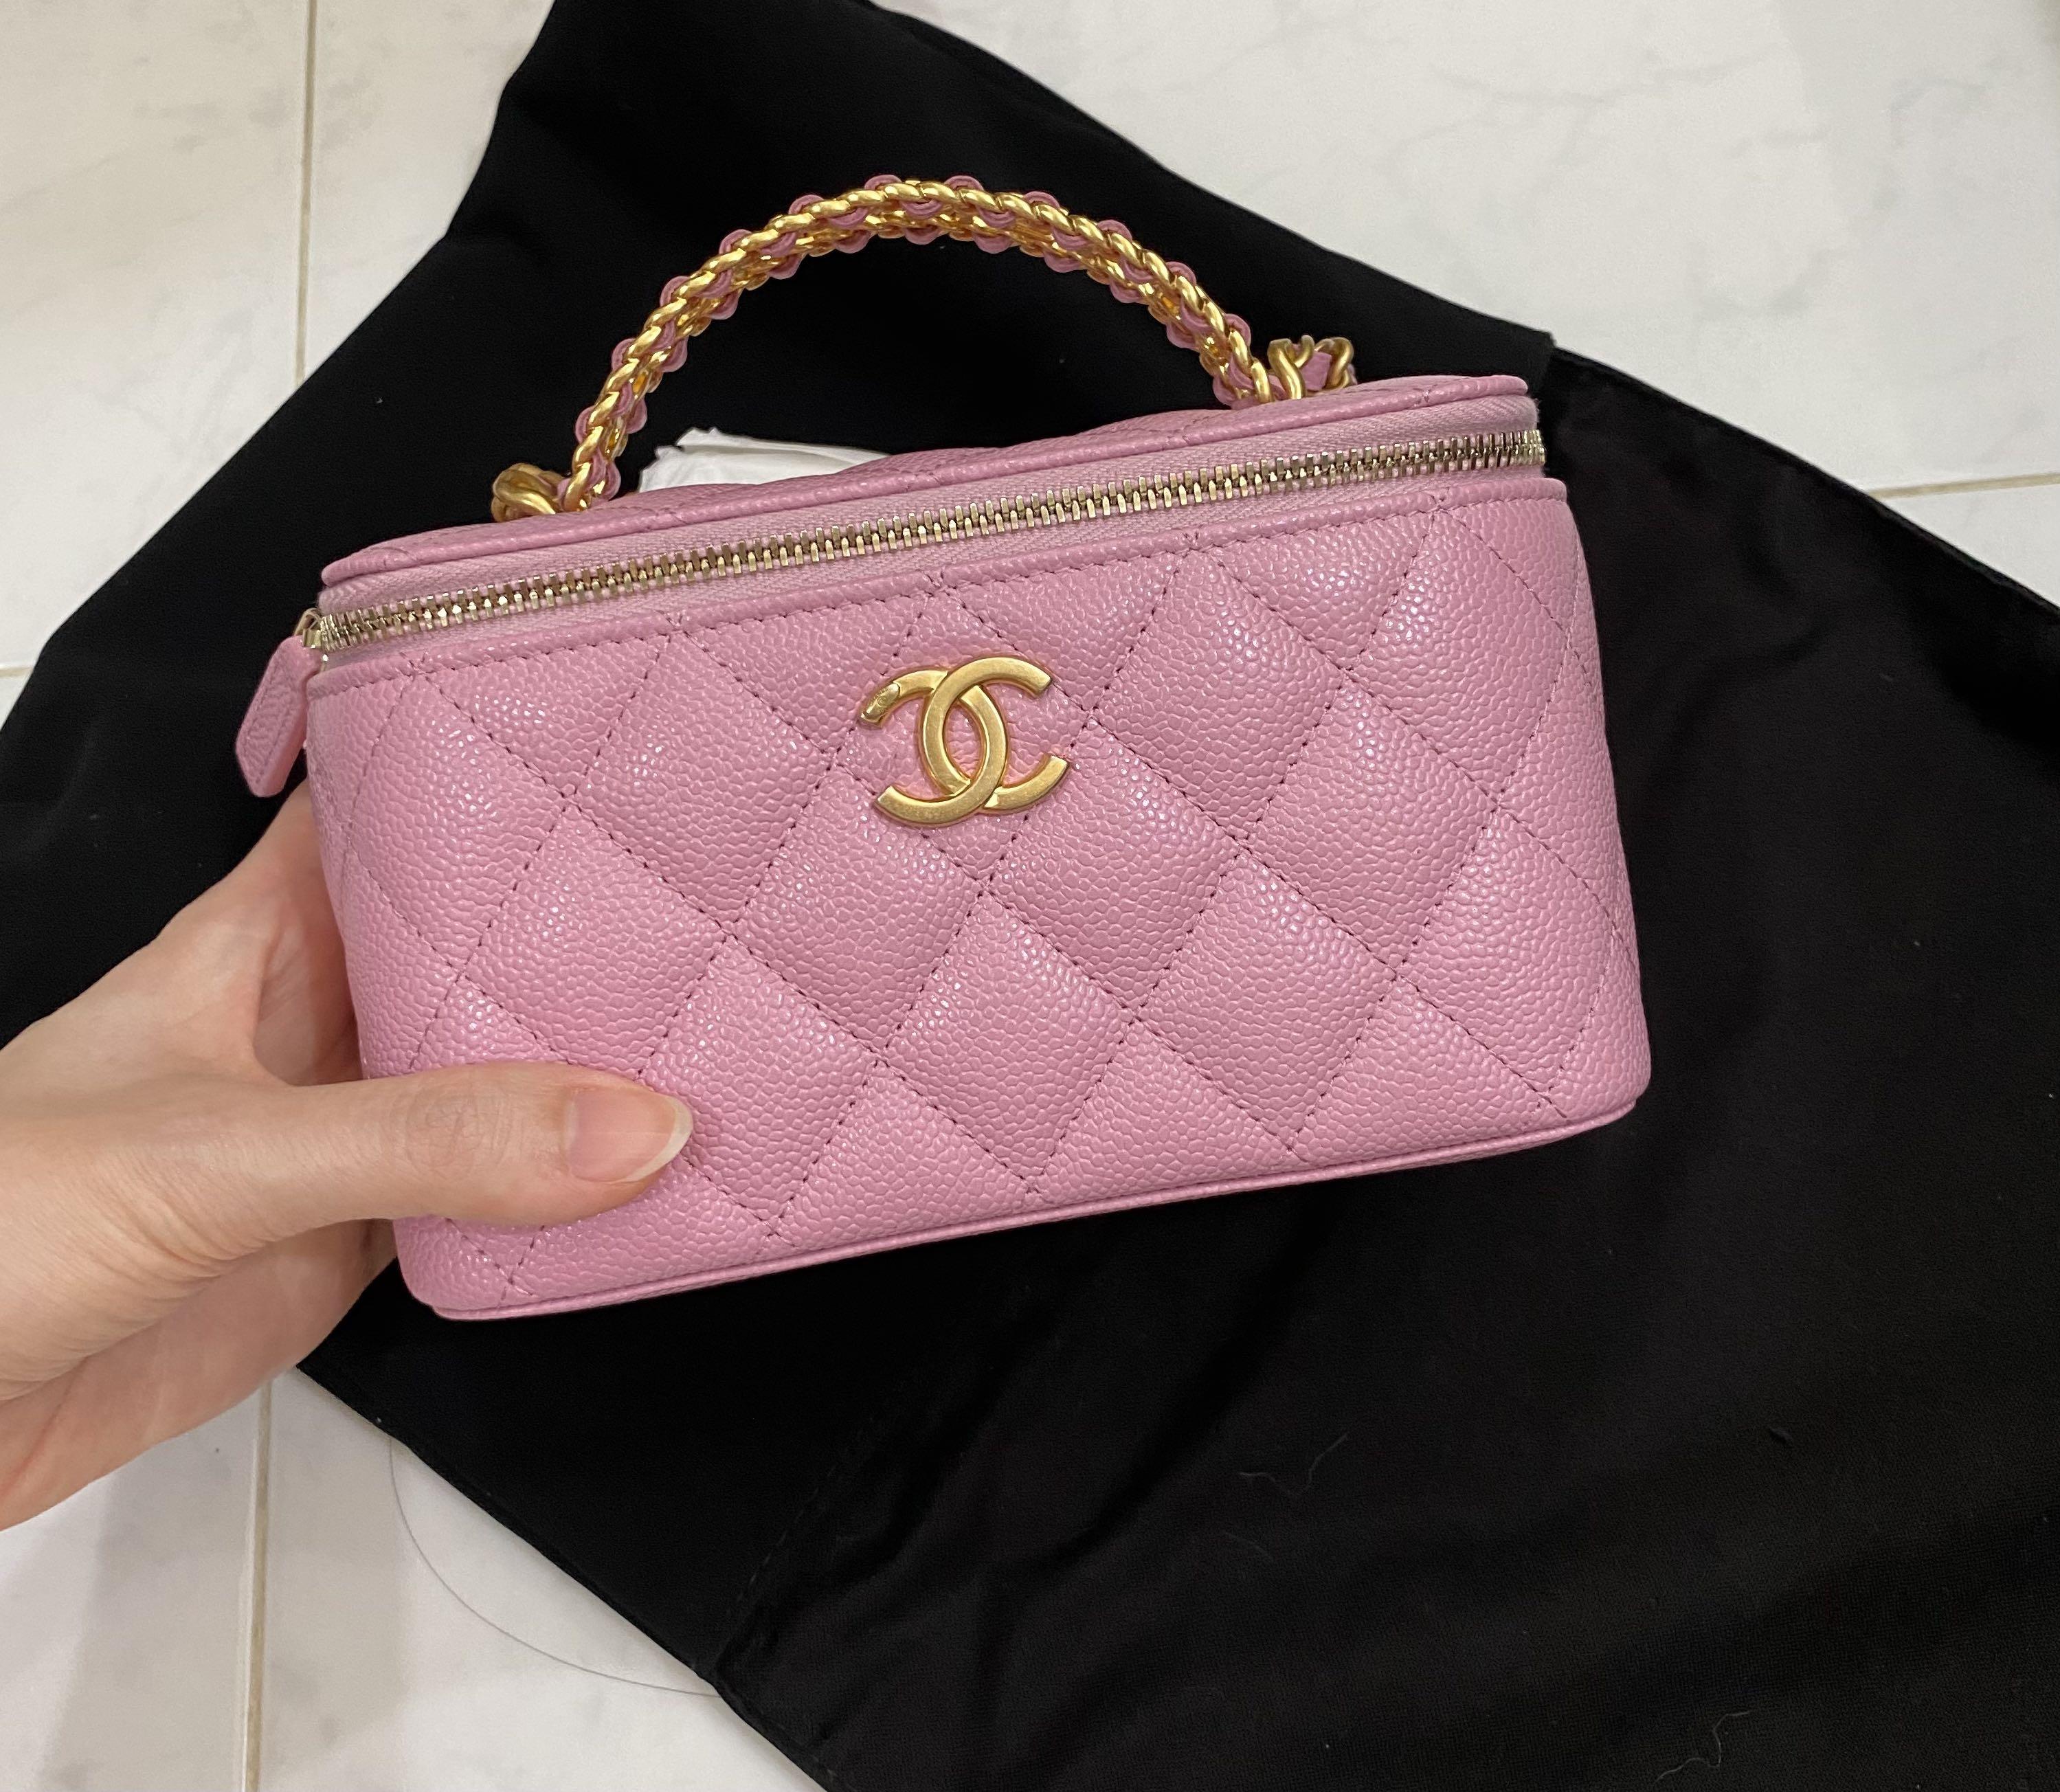 Chanel 22S Top Handle Vanity in Light Pink